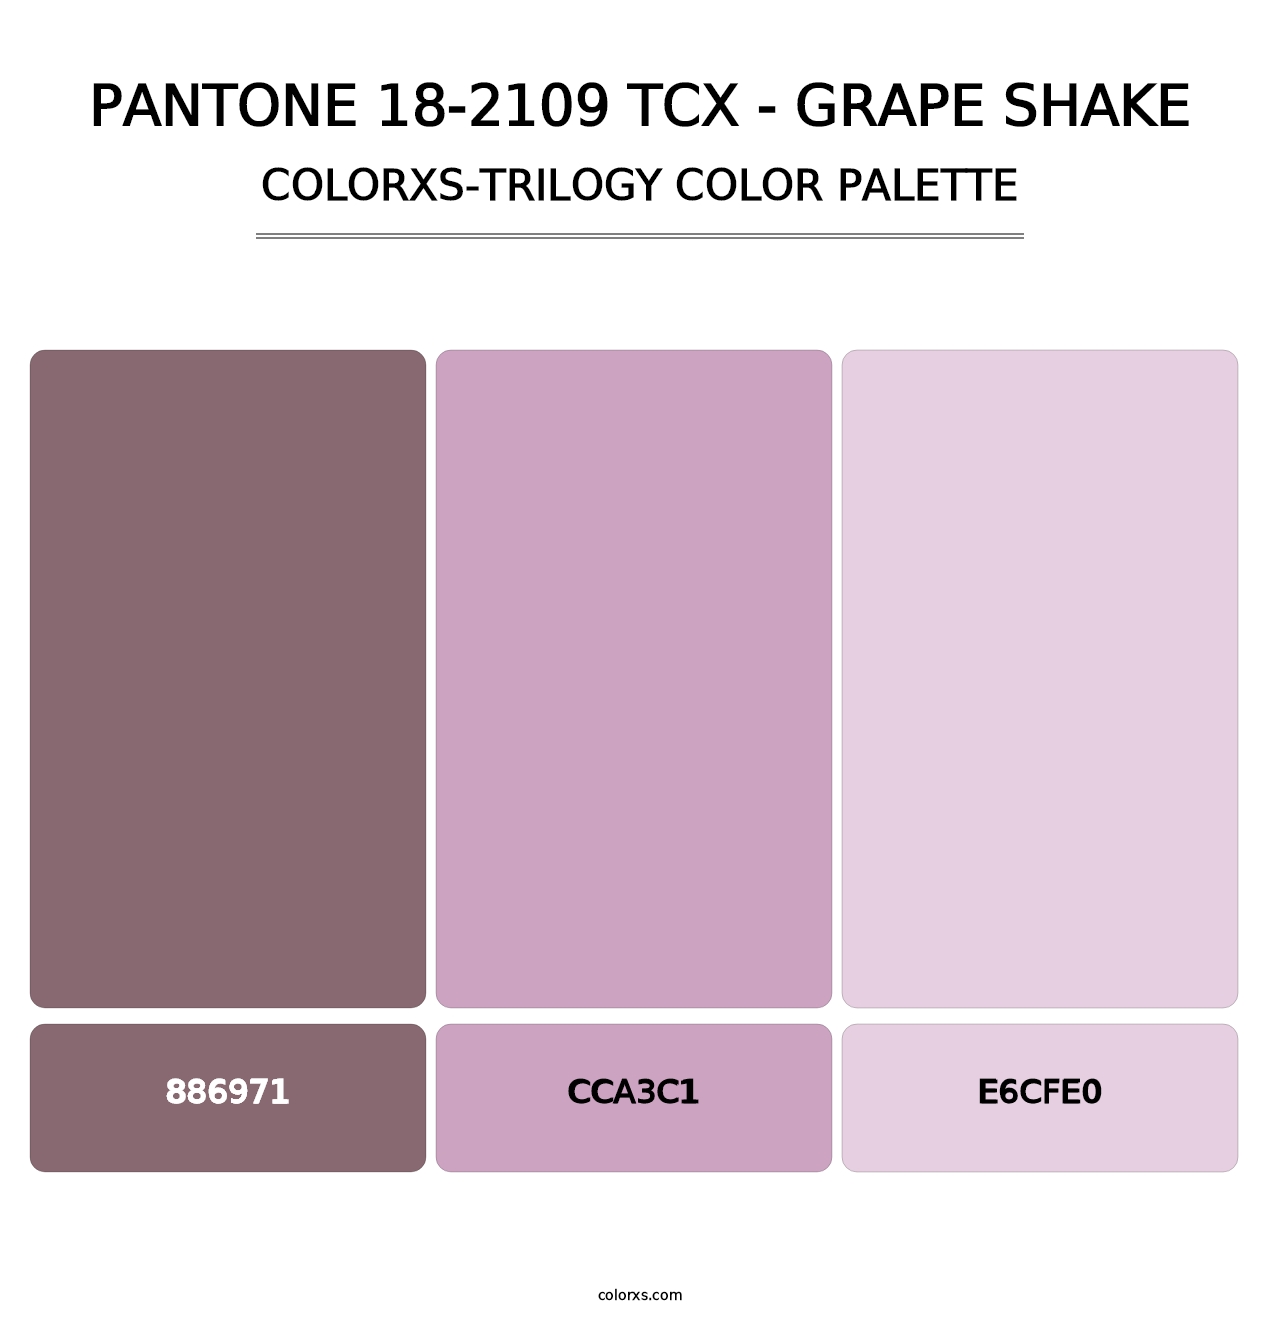 PANTONE 18-2109 TCX - Grape Shake - Colorxs Trilogy Palette